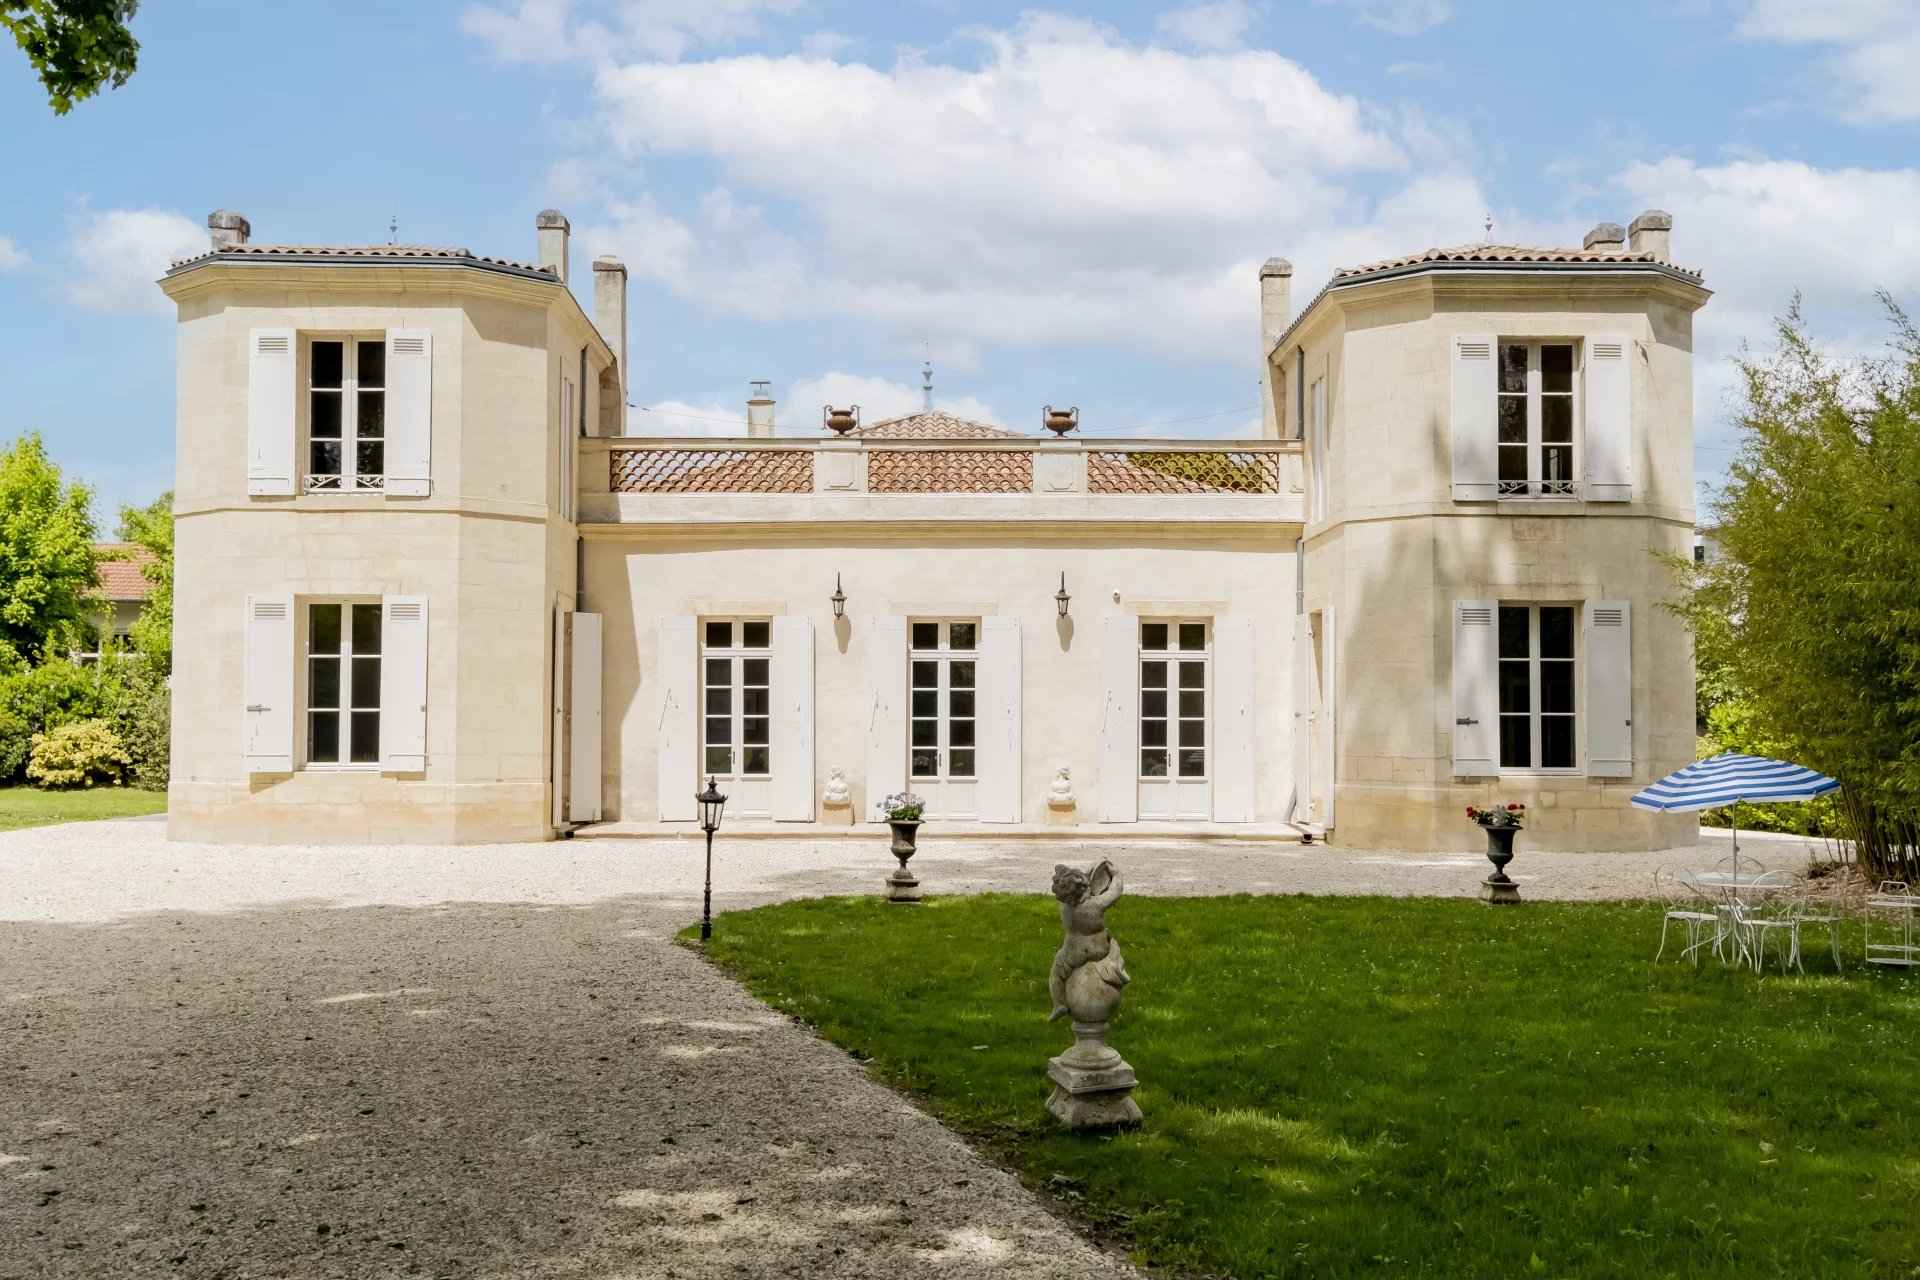 Chateau à vendre proche Bordeaux avec parc arboré et piscine